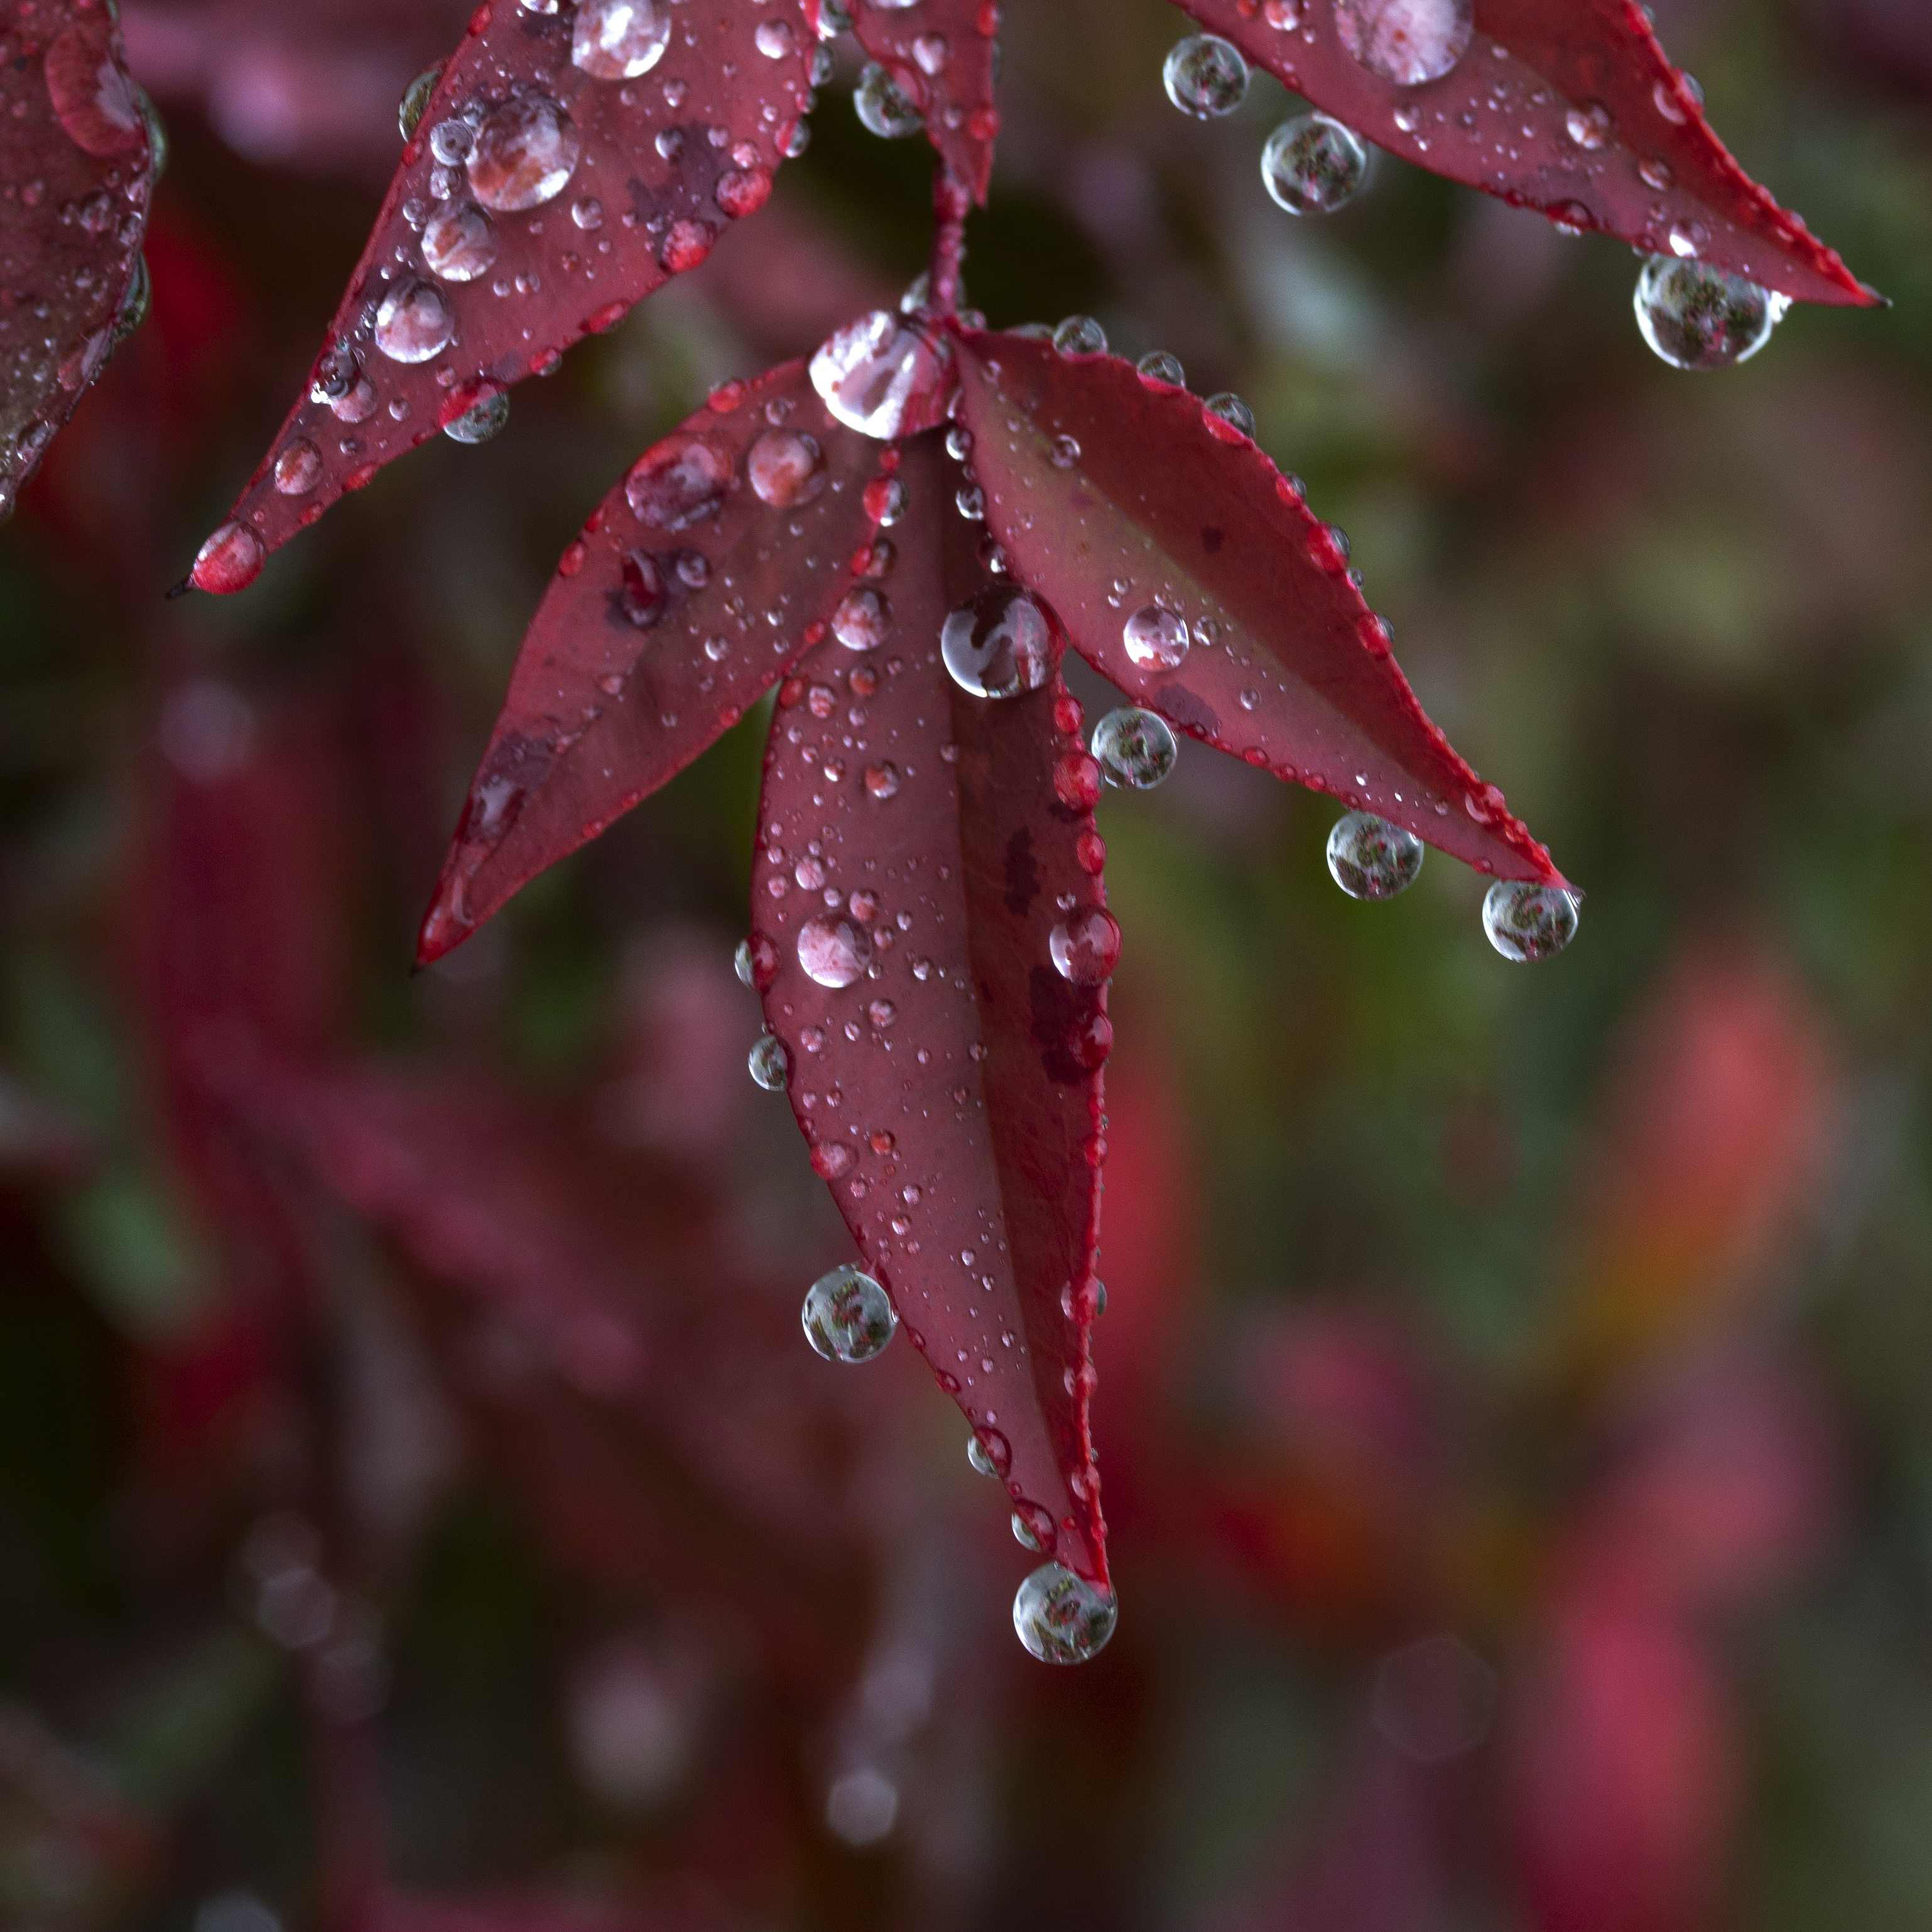 macro, drops, leaves, red, wet